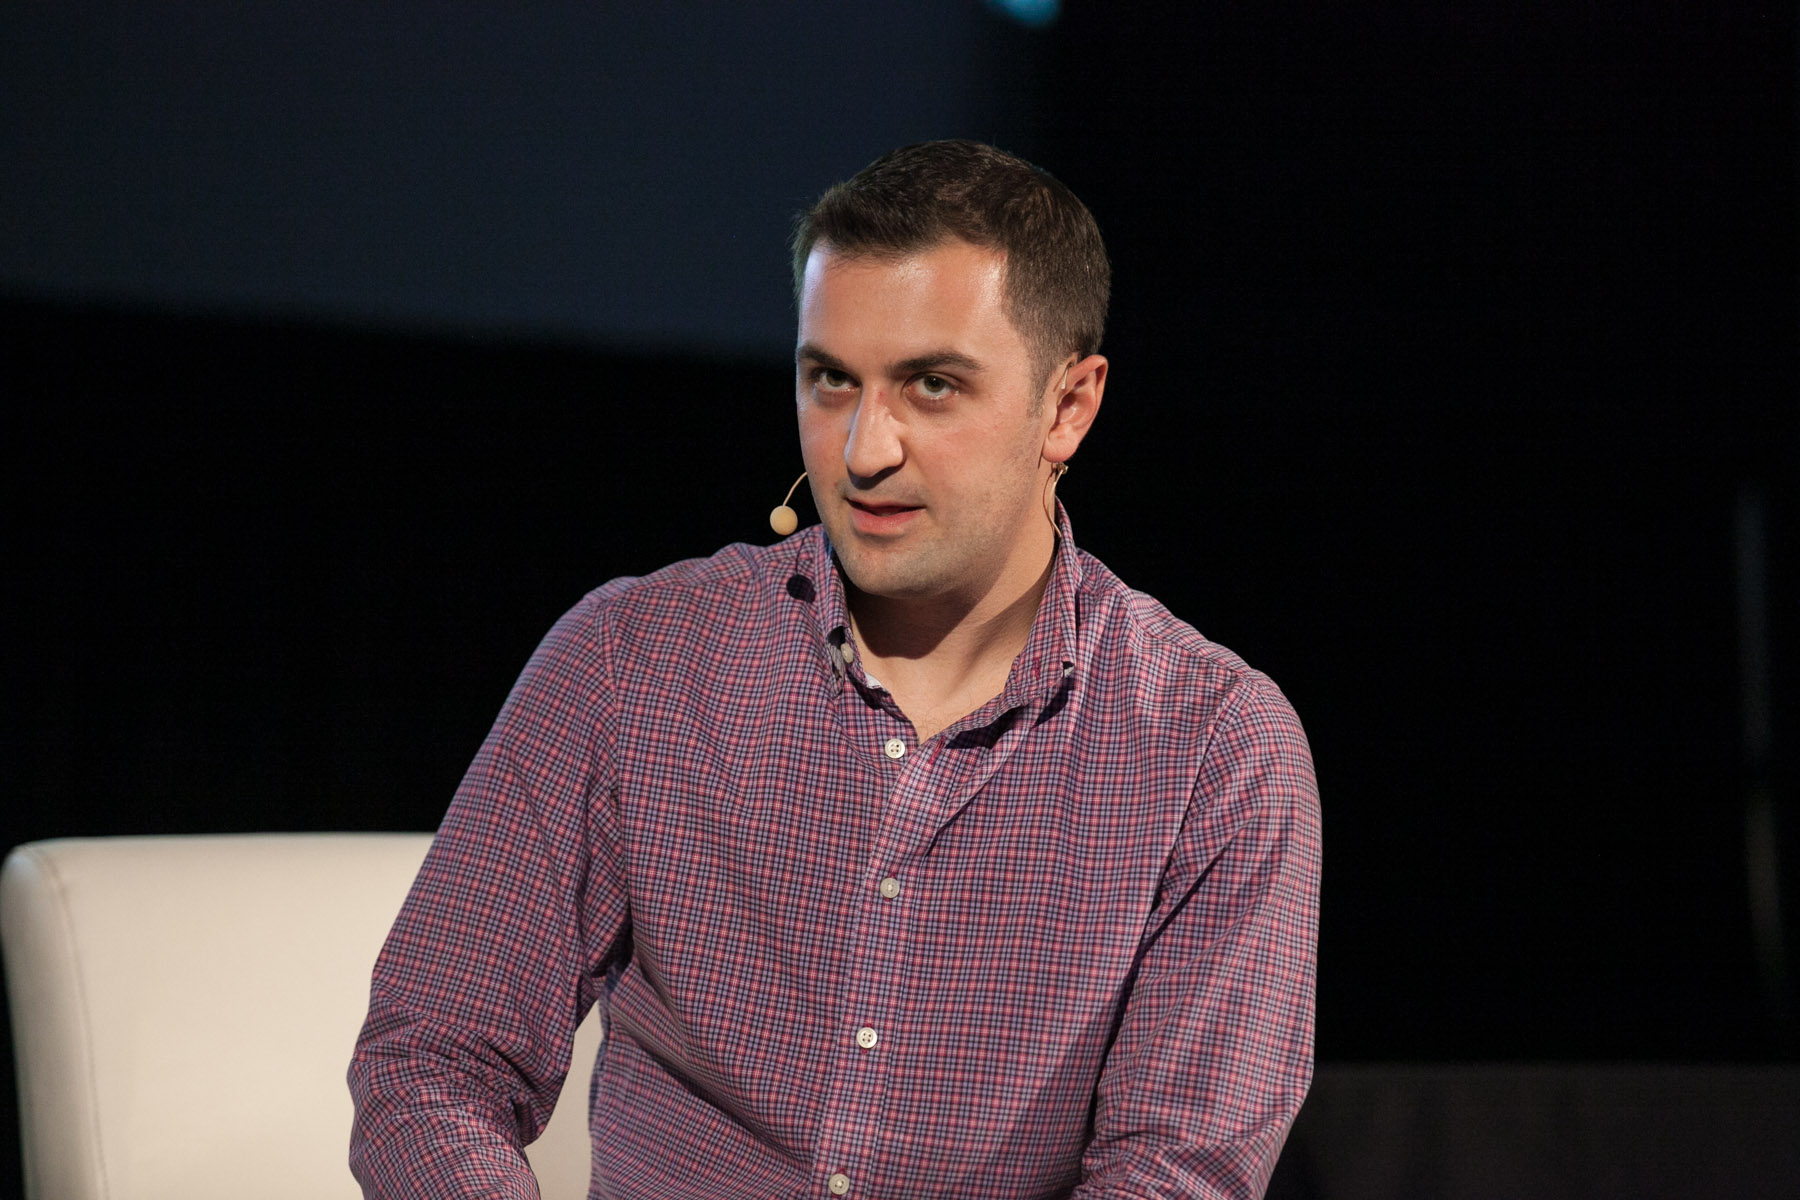 John Zimmer, co-founder of Lyft